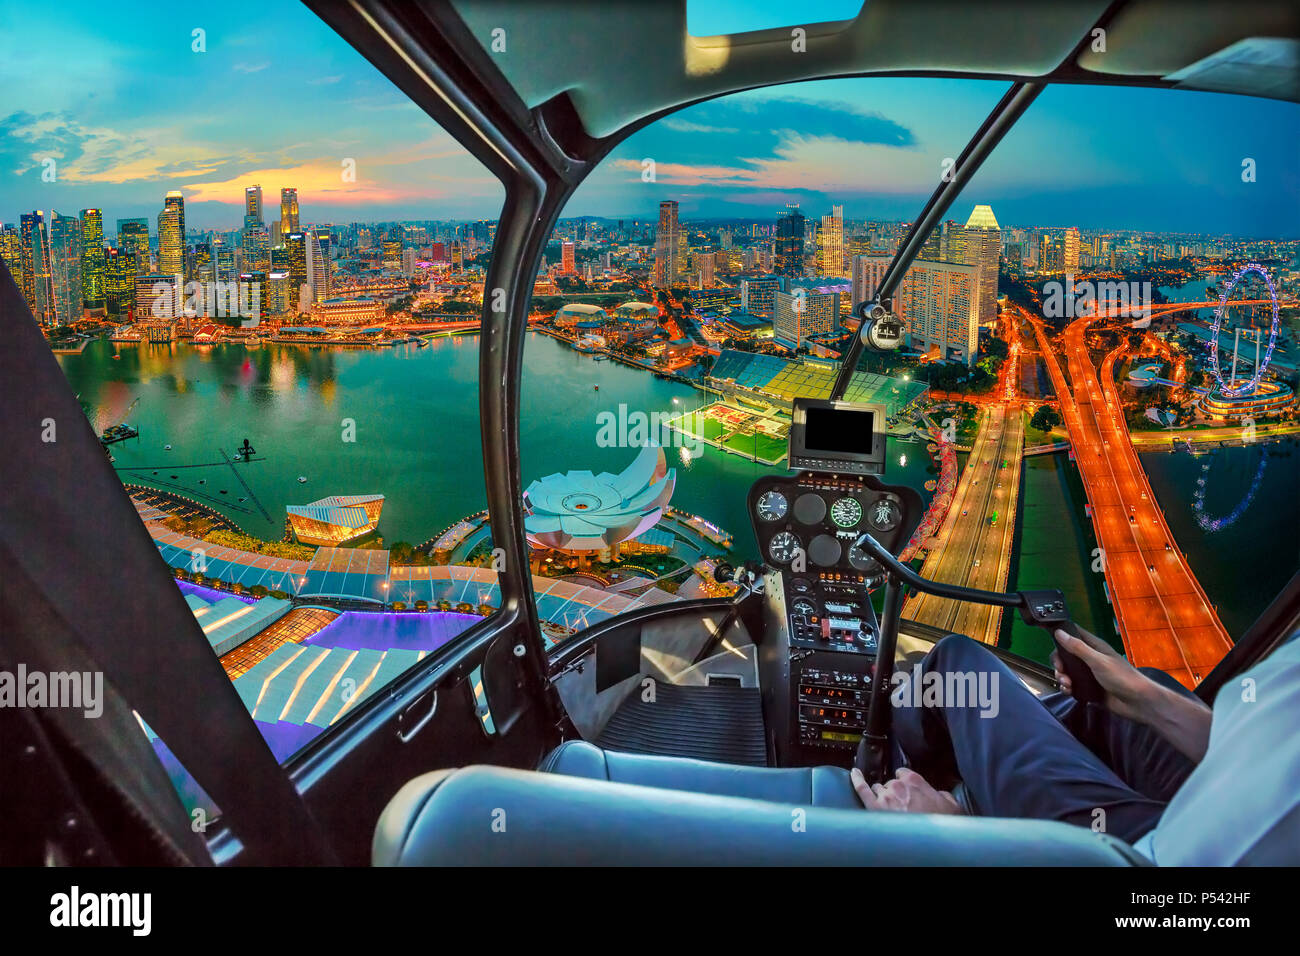 Elicottero pozzetto interno su twilight panorama di Singapore marina bay con illuminata grattacieli del quartiere finanziario del centro cittadino di Citta'. Singapore cityscape vista aerea. Foto Stock